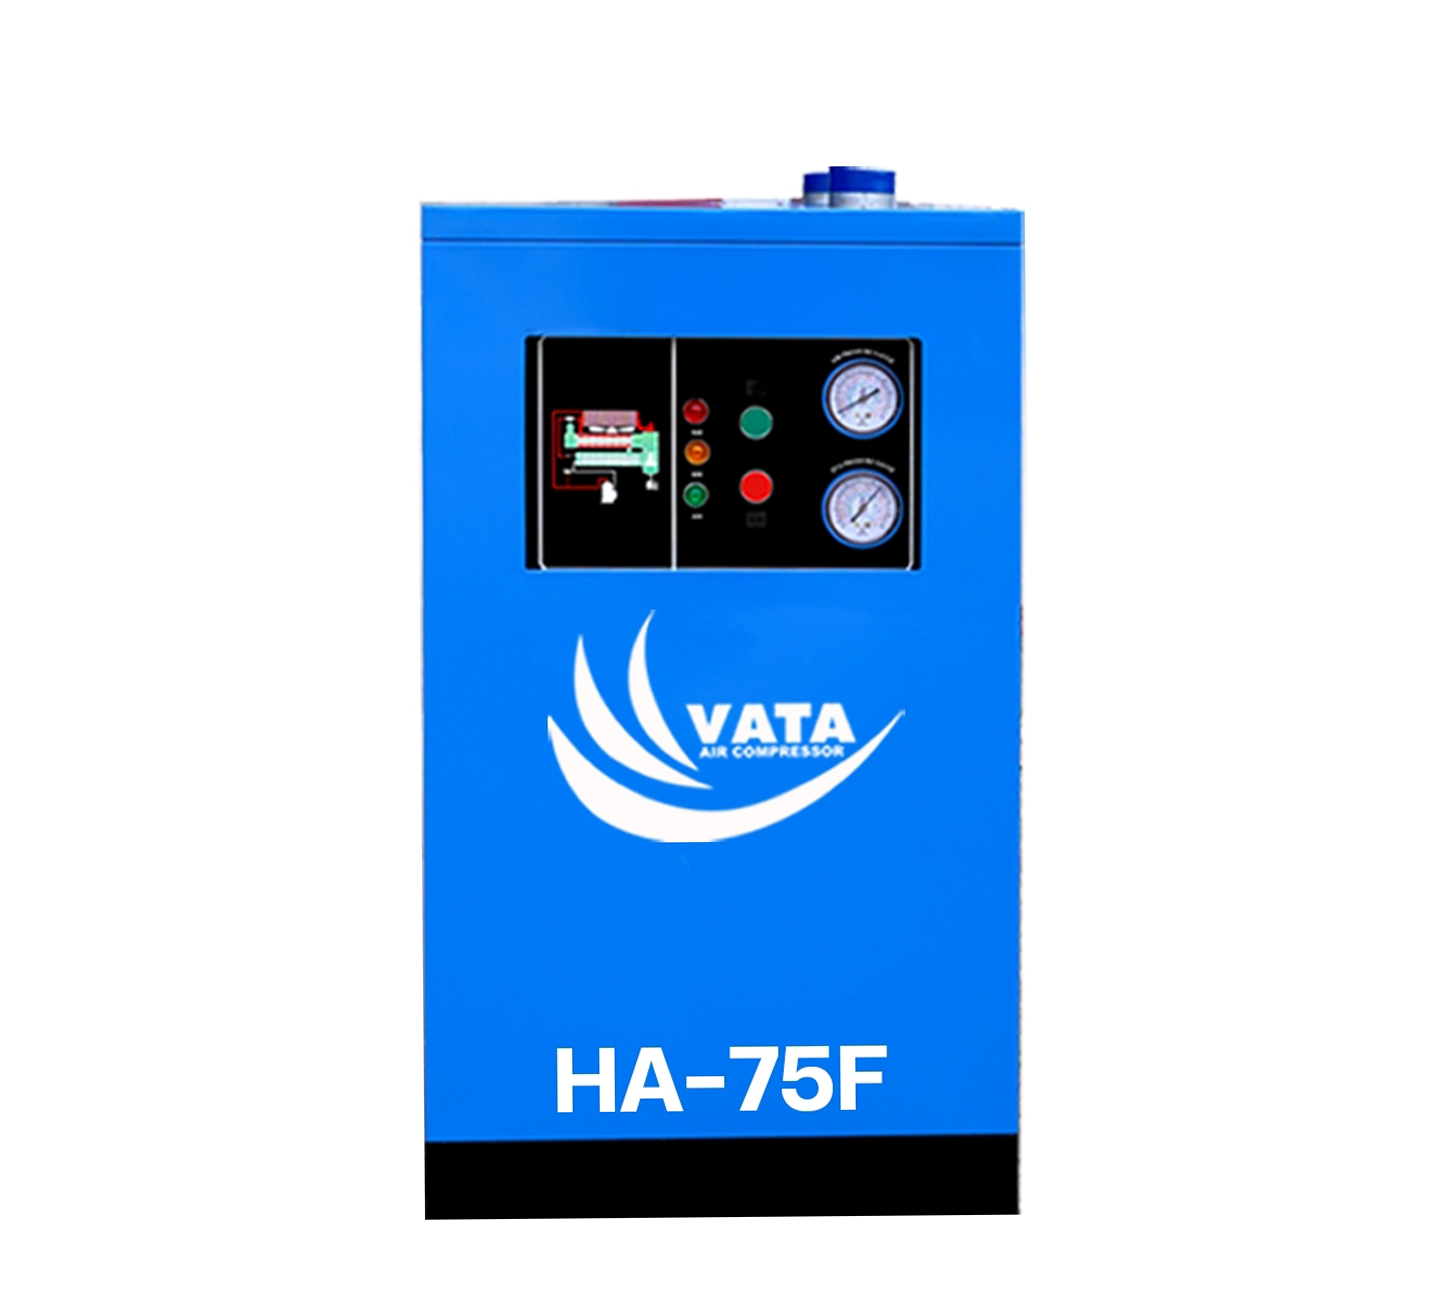 เครื่องทำลมแห้ง Refrigerated Air Dryer แบรนด์ VATA รุ่น HA-75F ขนาด 1.98 kw. ไฟฟ้า 220V รับประกันสินค้า 1 ปี ตามเงื่อนไขของบริษัทฯ